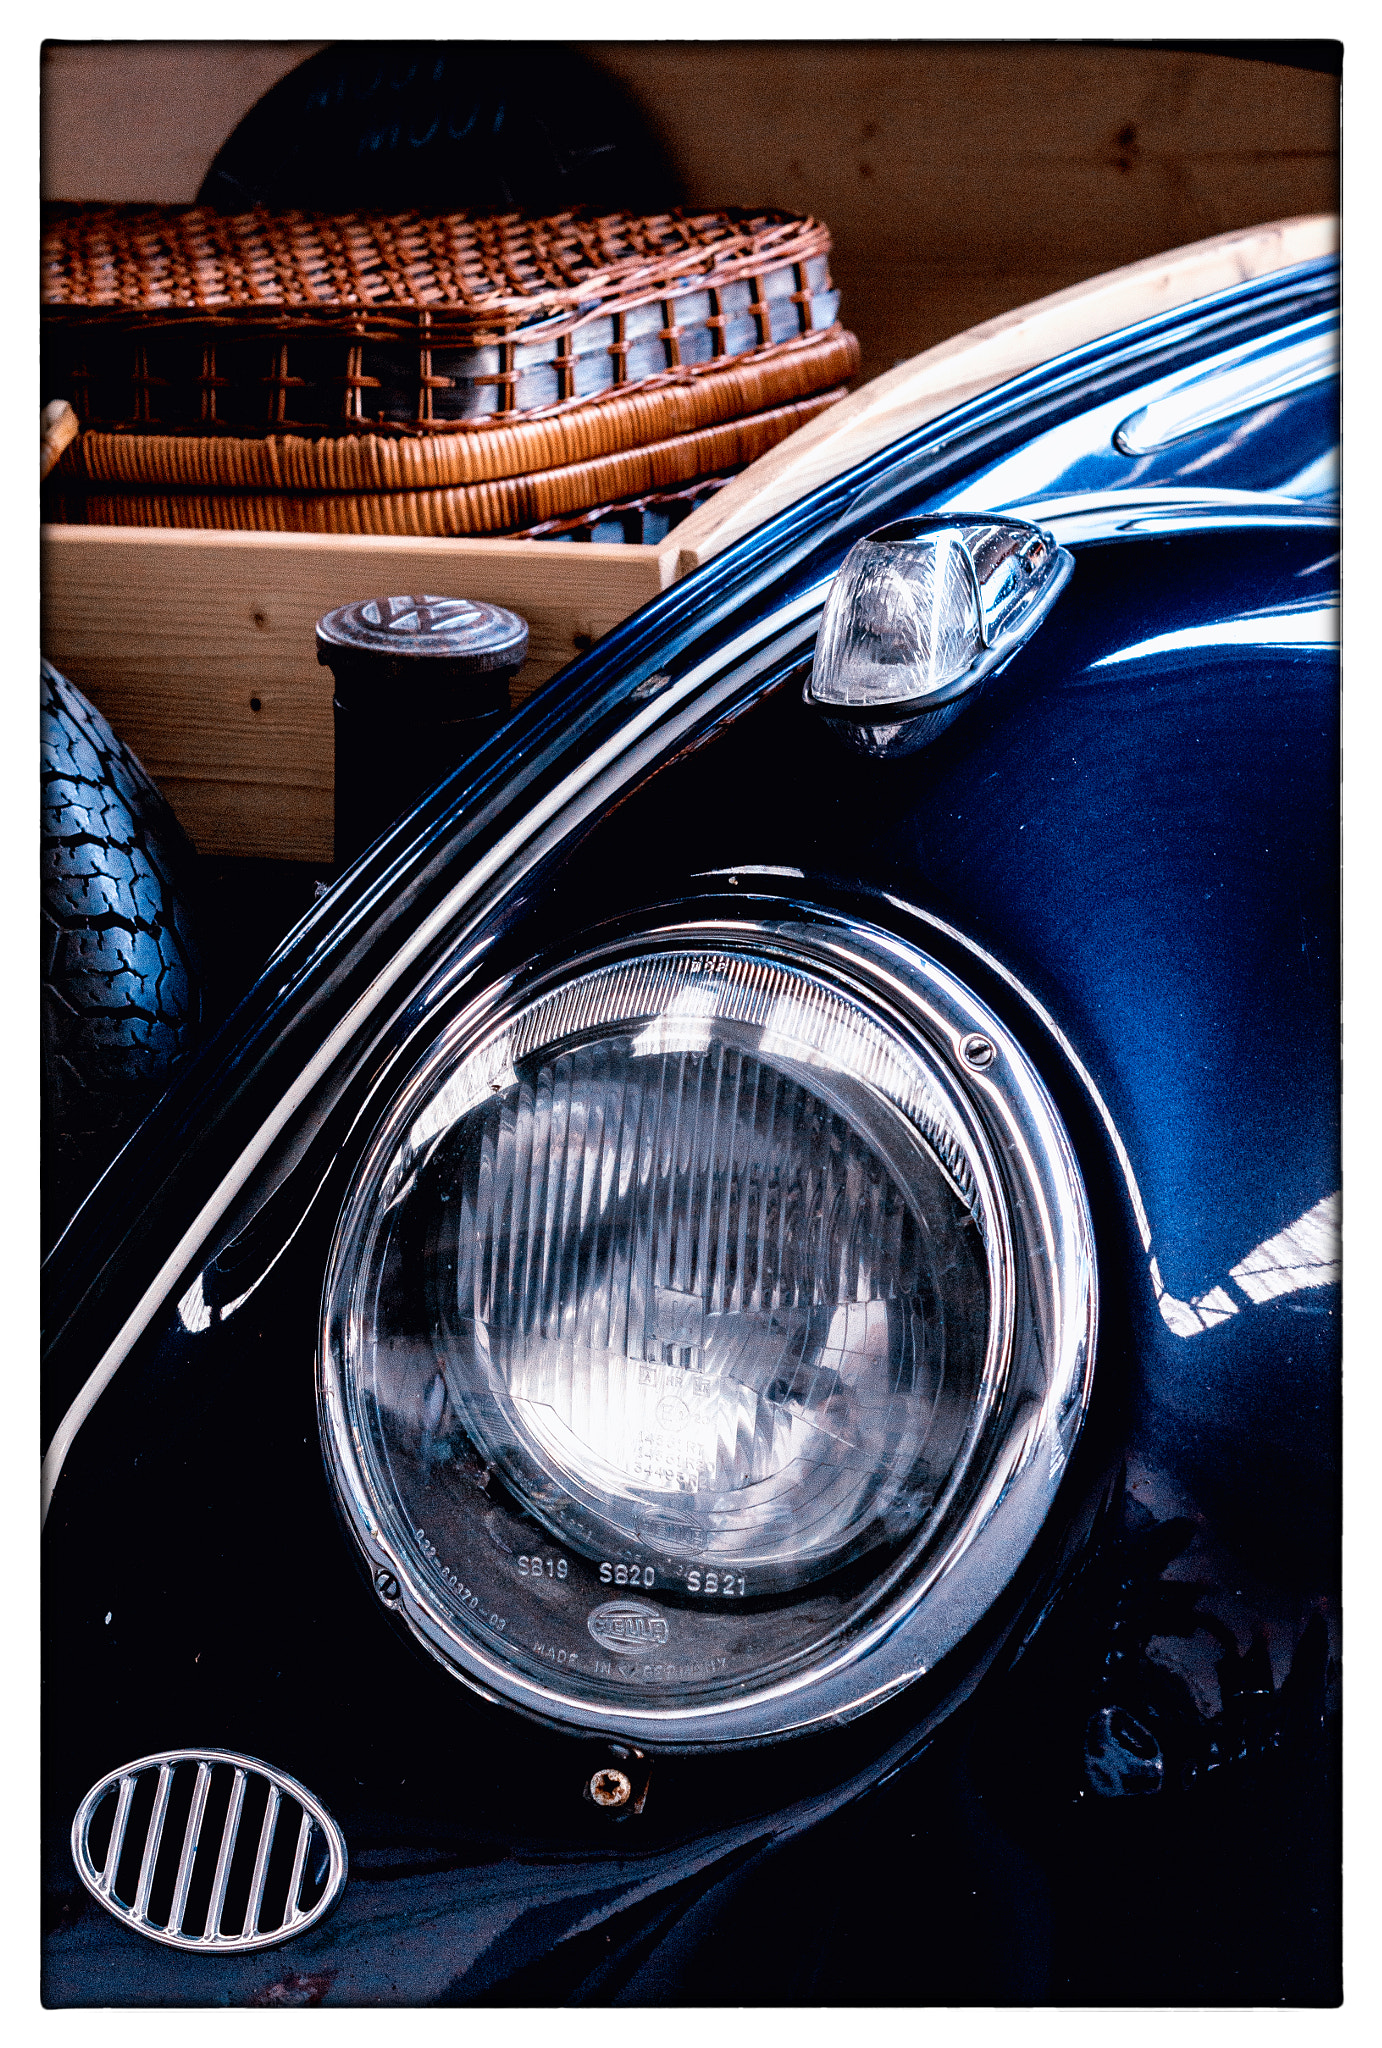 Pentax K-5 sample photo. Volkswagen beetle photography